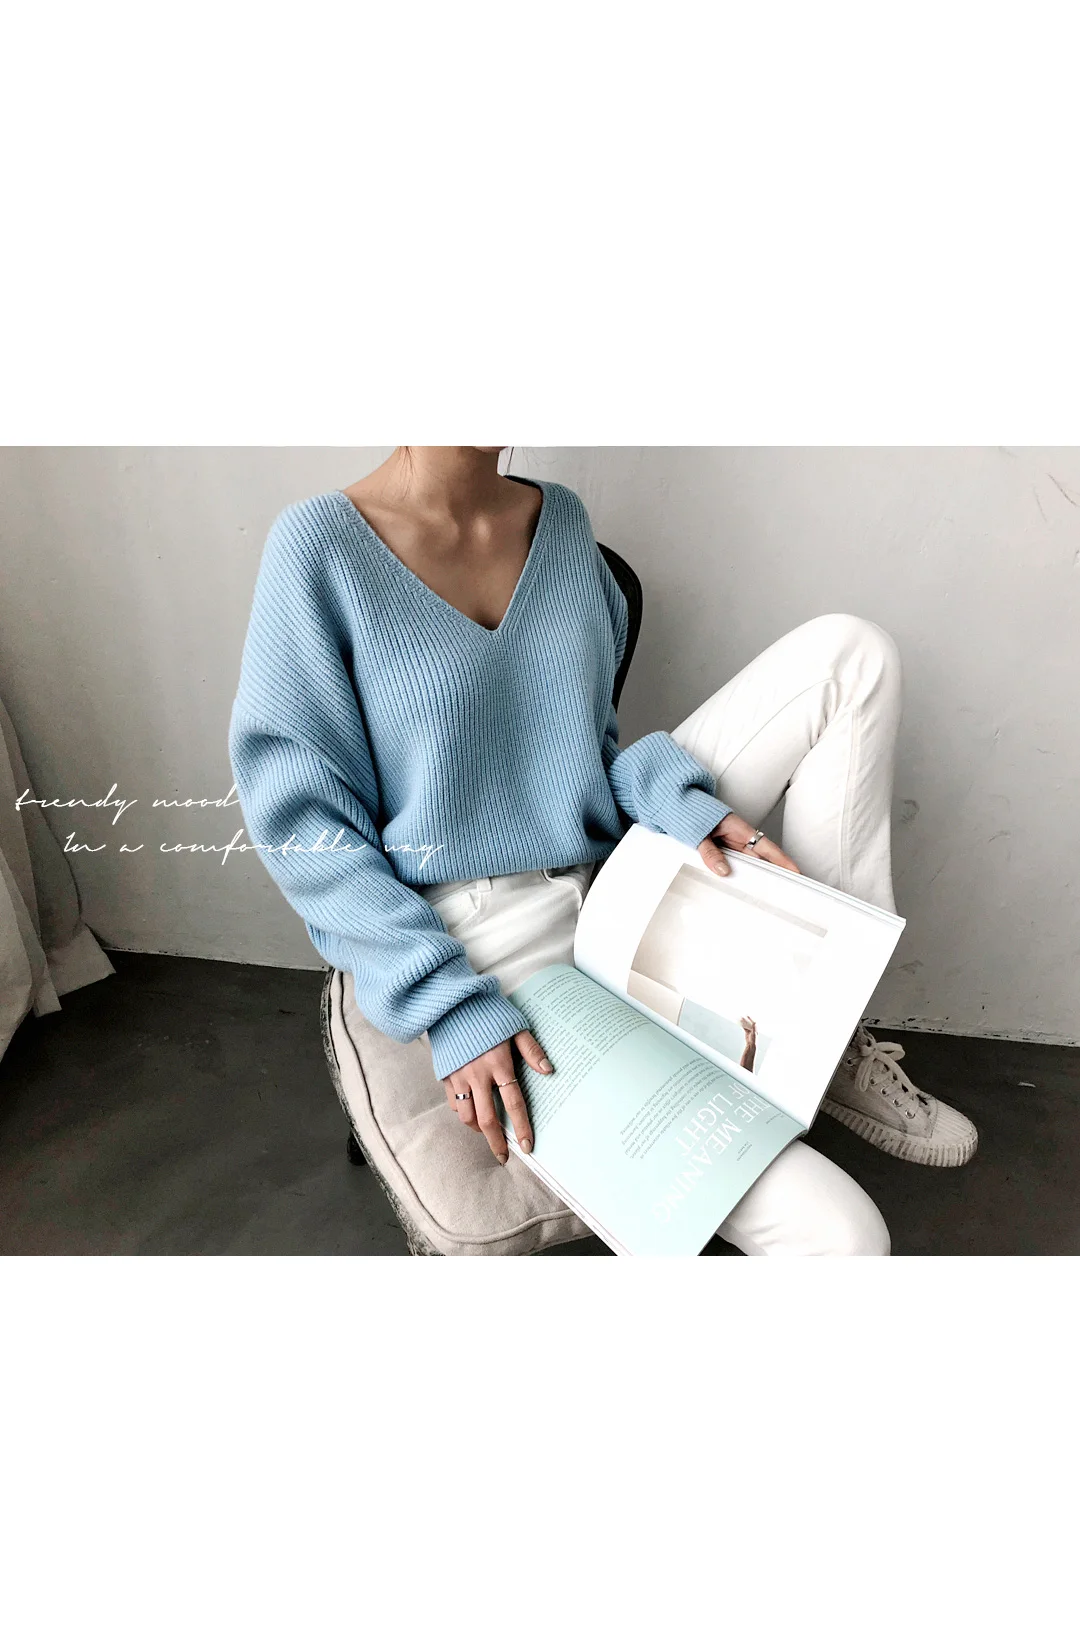 Cheerart пуловер свитер женский с v-образным вырезом свободный свитер корейский стиль трикотаж Джемперы осенняя одежда